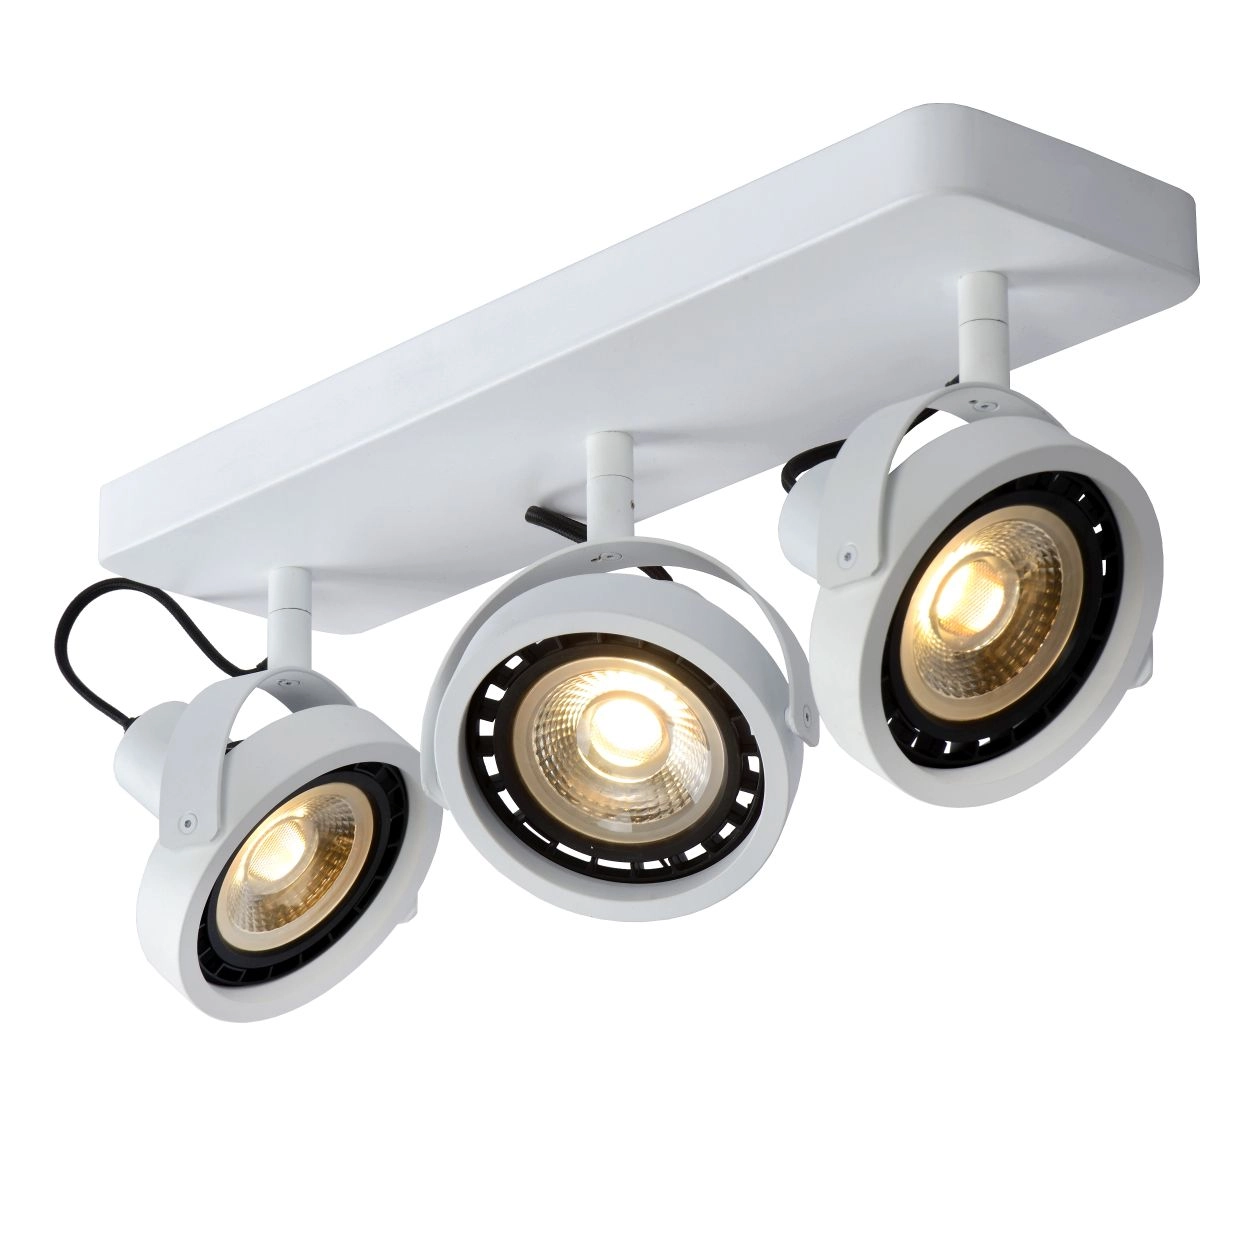 LU 31931/36/31 Lucide TALA LED - Ceiling spotlight - LED Dim to warm - GU10 (ES111) - 3x12W 2200K/30